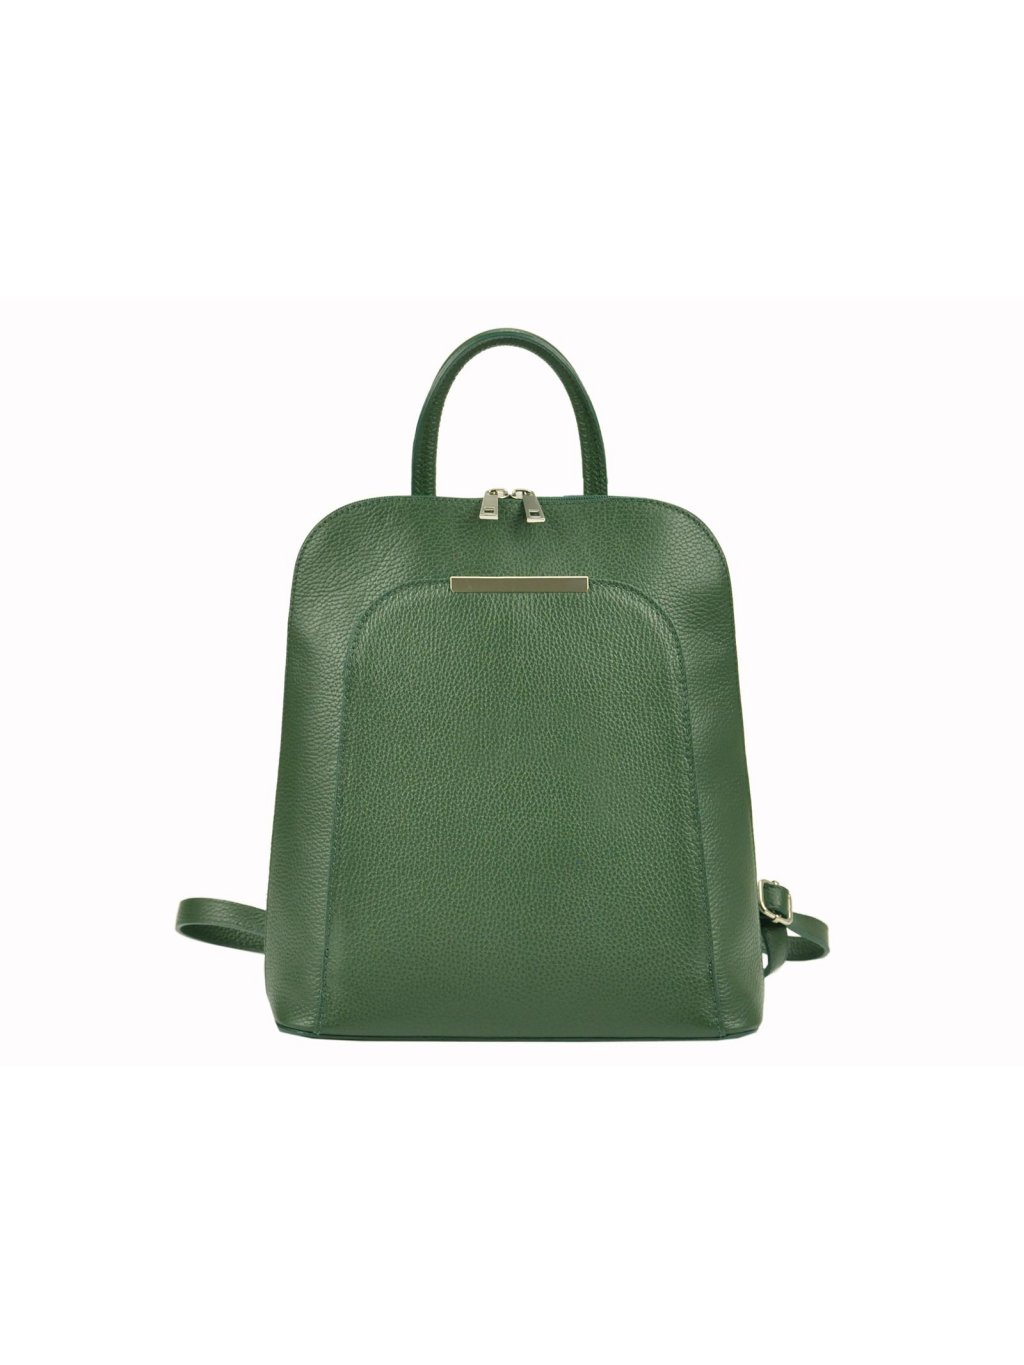 Dámský kožený batoh Patrizia Piu 519-001 zelený